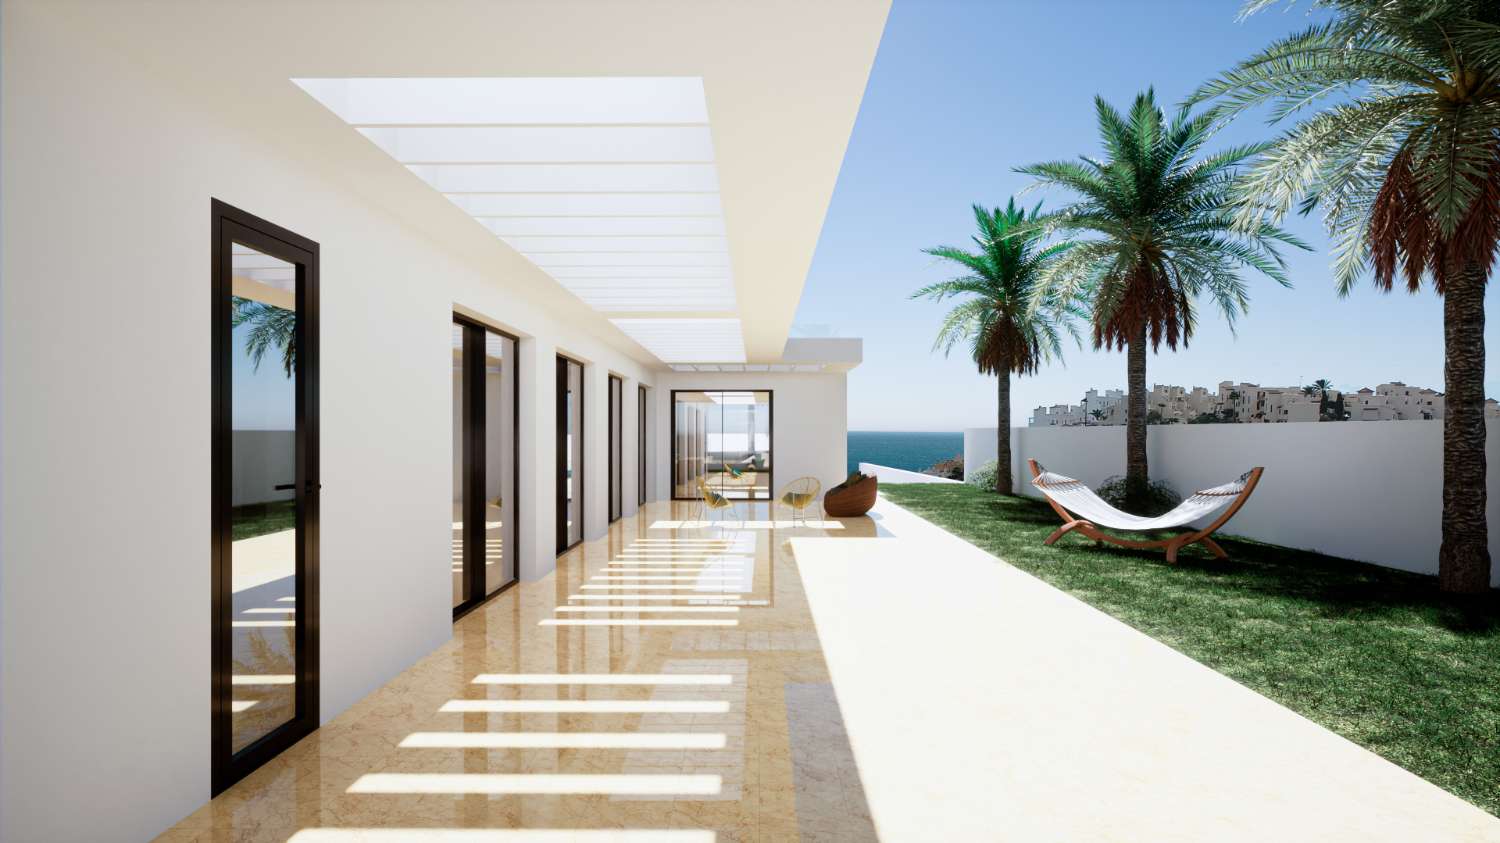 Villa su un livello di 208 m2 su un terreno di 982 m2. Splendida vista sul mare. In ulteriori 229 m2 di terrazze.